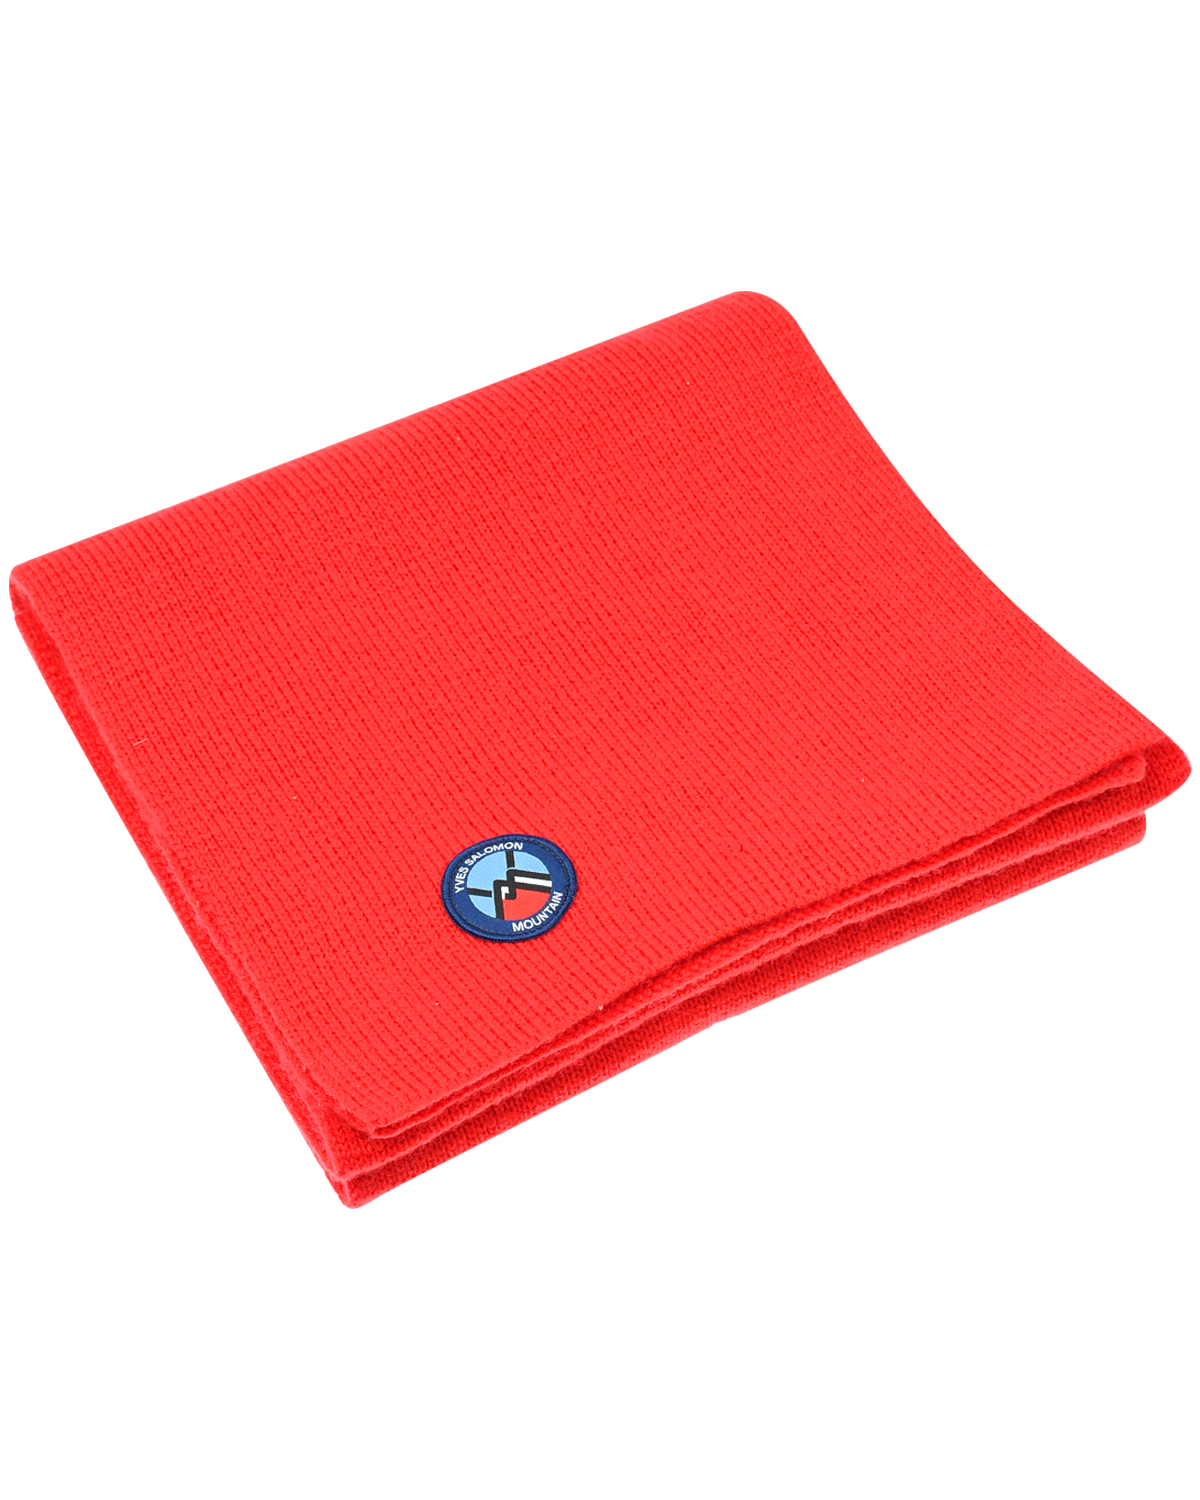 Красный шарф из шерсти и кашемира, 184x26 см Yves Salomon, размер unica